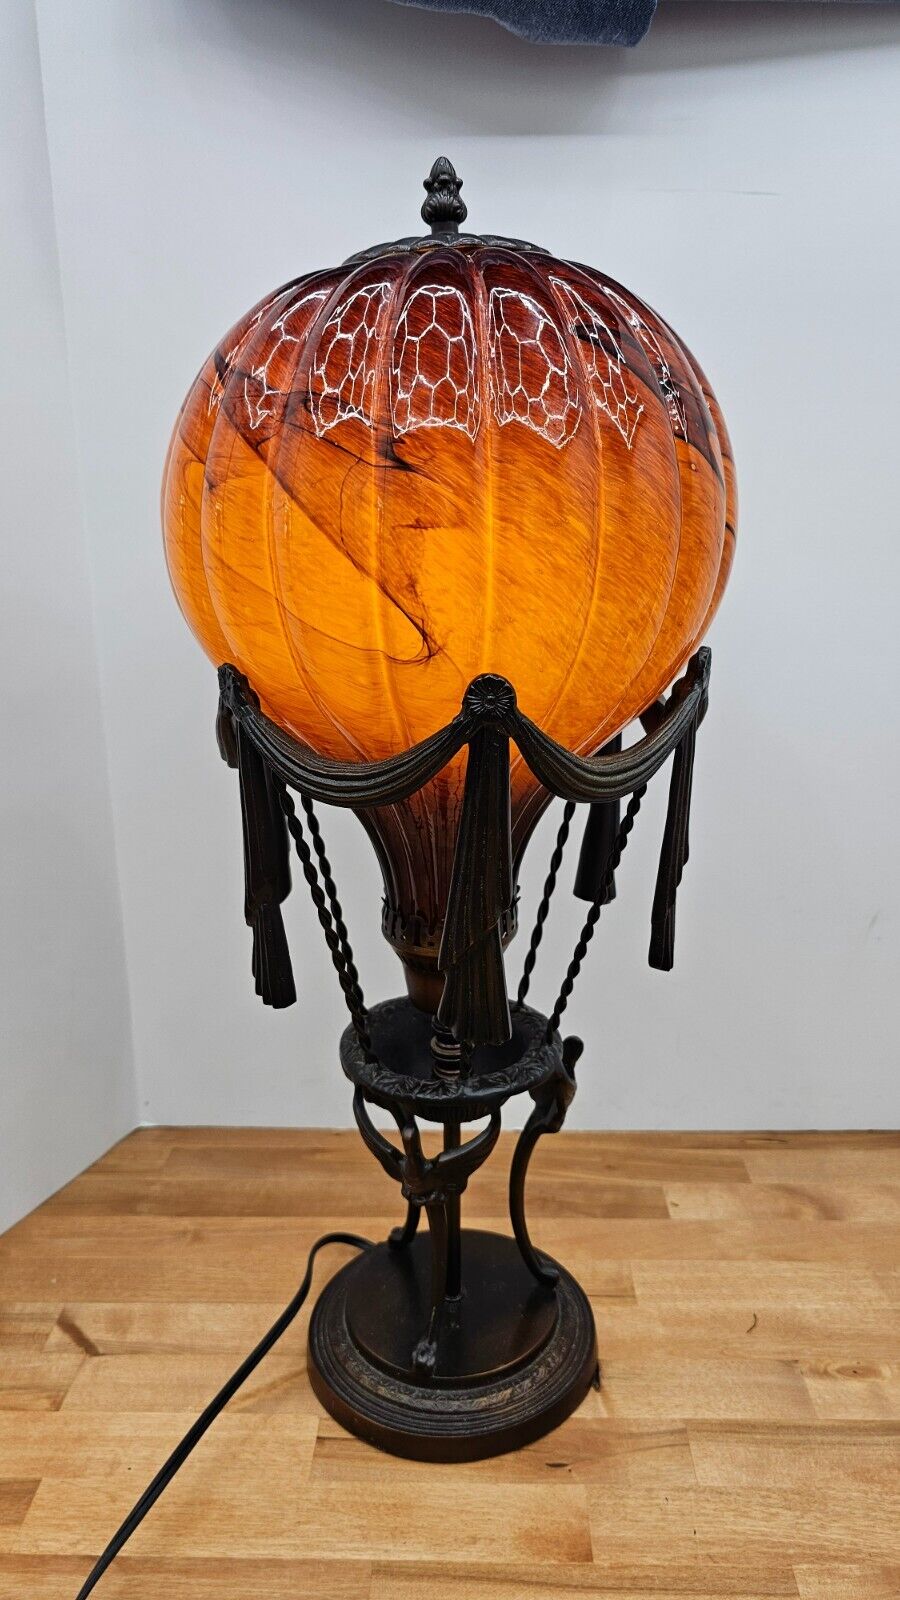 Art Deco Maitland Smith Style Hot Air Balloon Table Lamp 23”